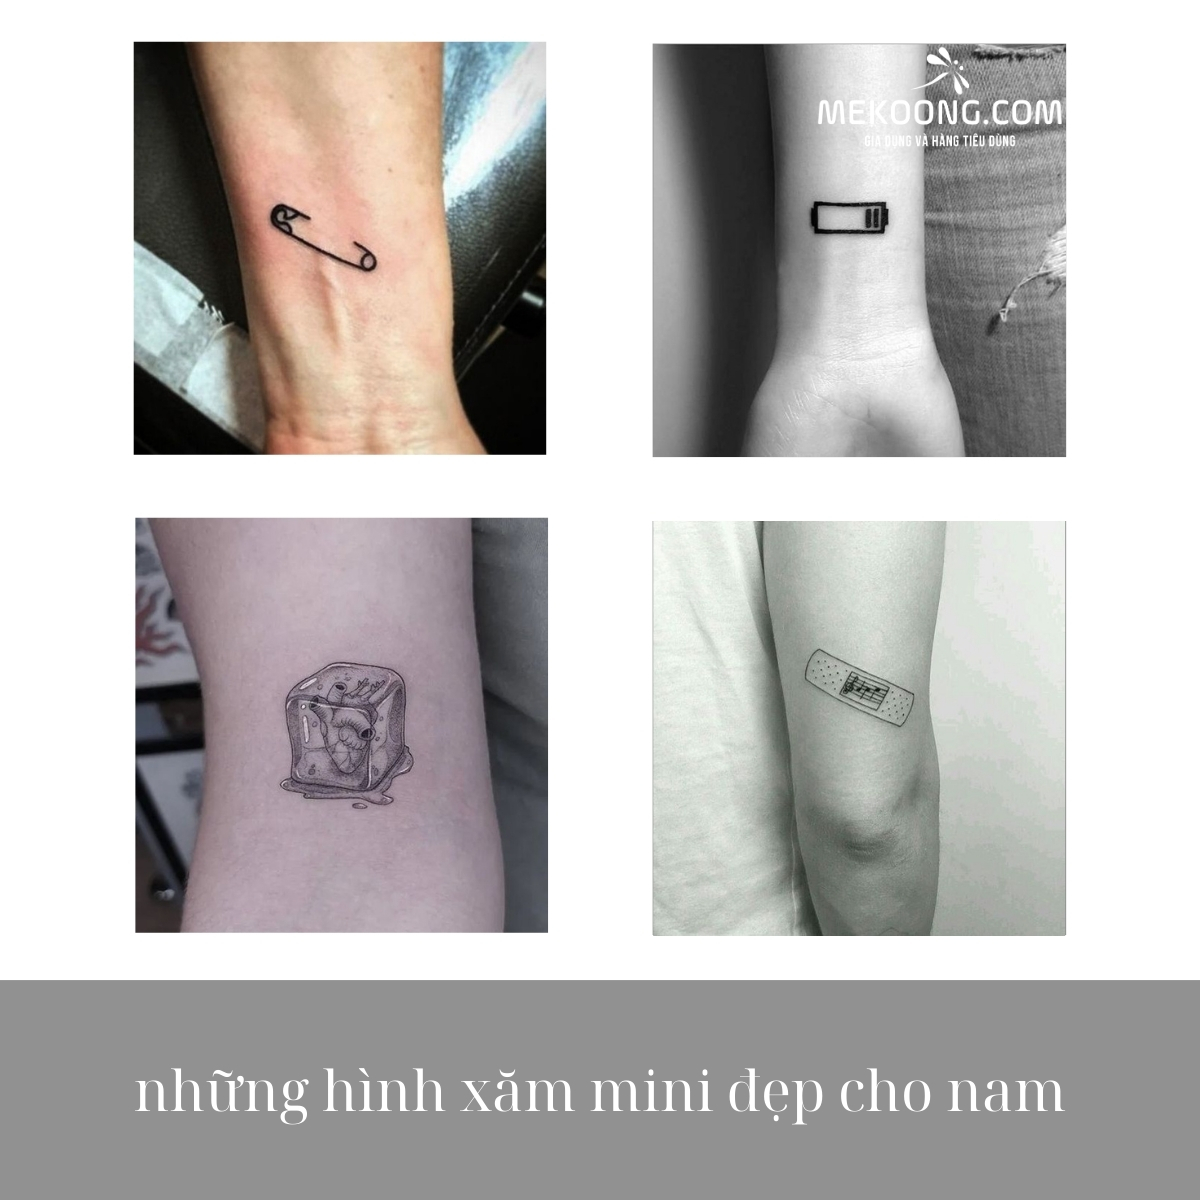 Mini đẹp cho nam... - Thế Giới Tattoo - Xăm Hình Nghệ Thuật | Facebook